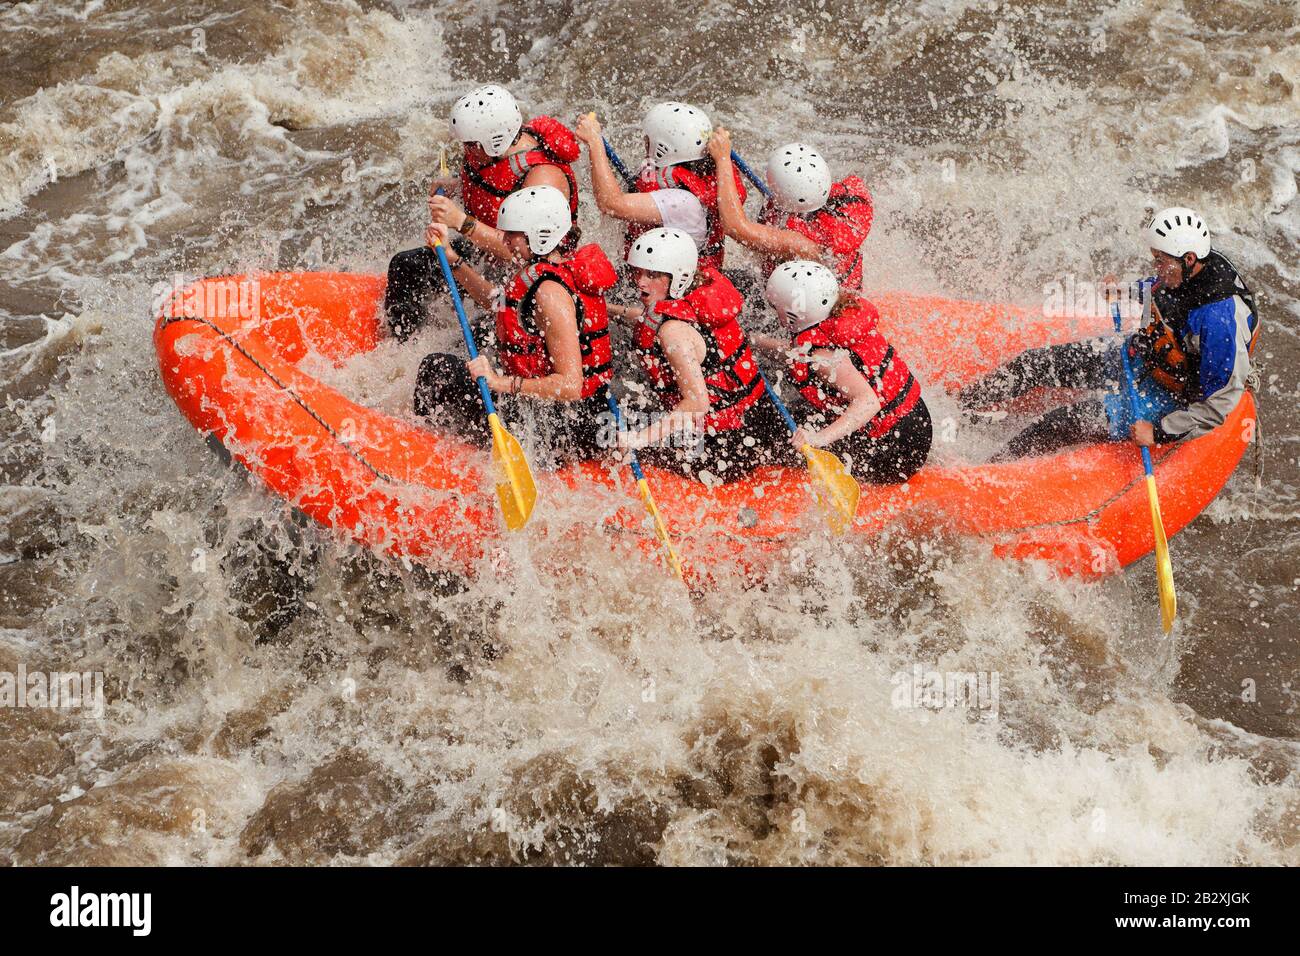 Partnerschaft Von Mixed Pioneer Male Und Women Mit Der Führung Von Professional Pilot Beim Wildwasser-River-Rafting In Ecuador Stockfoto